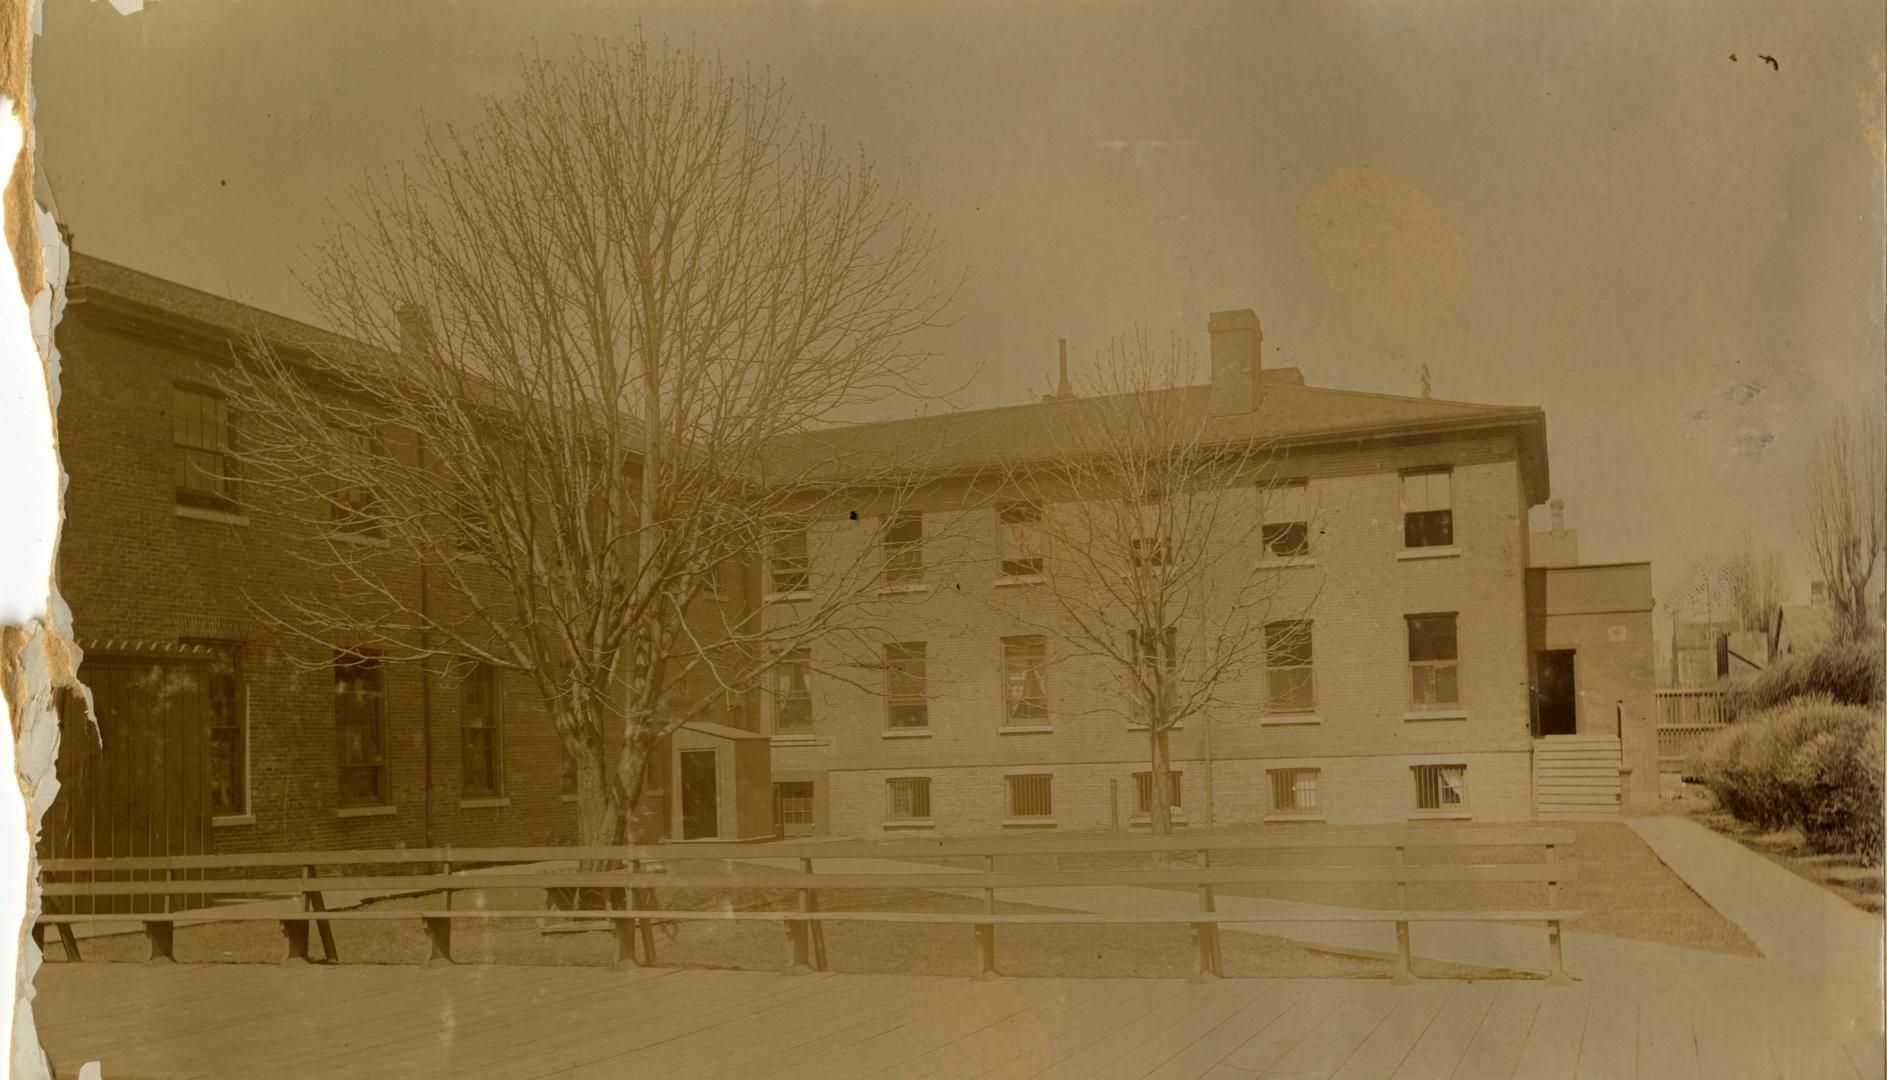 Upper Canada College (1831-1891), view of quadrangle